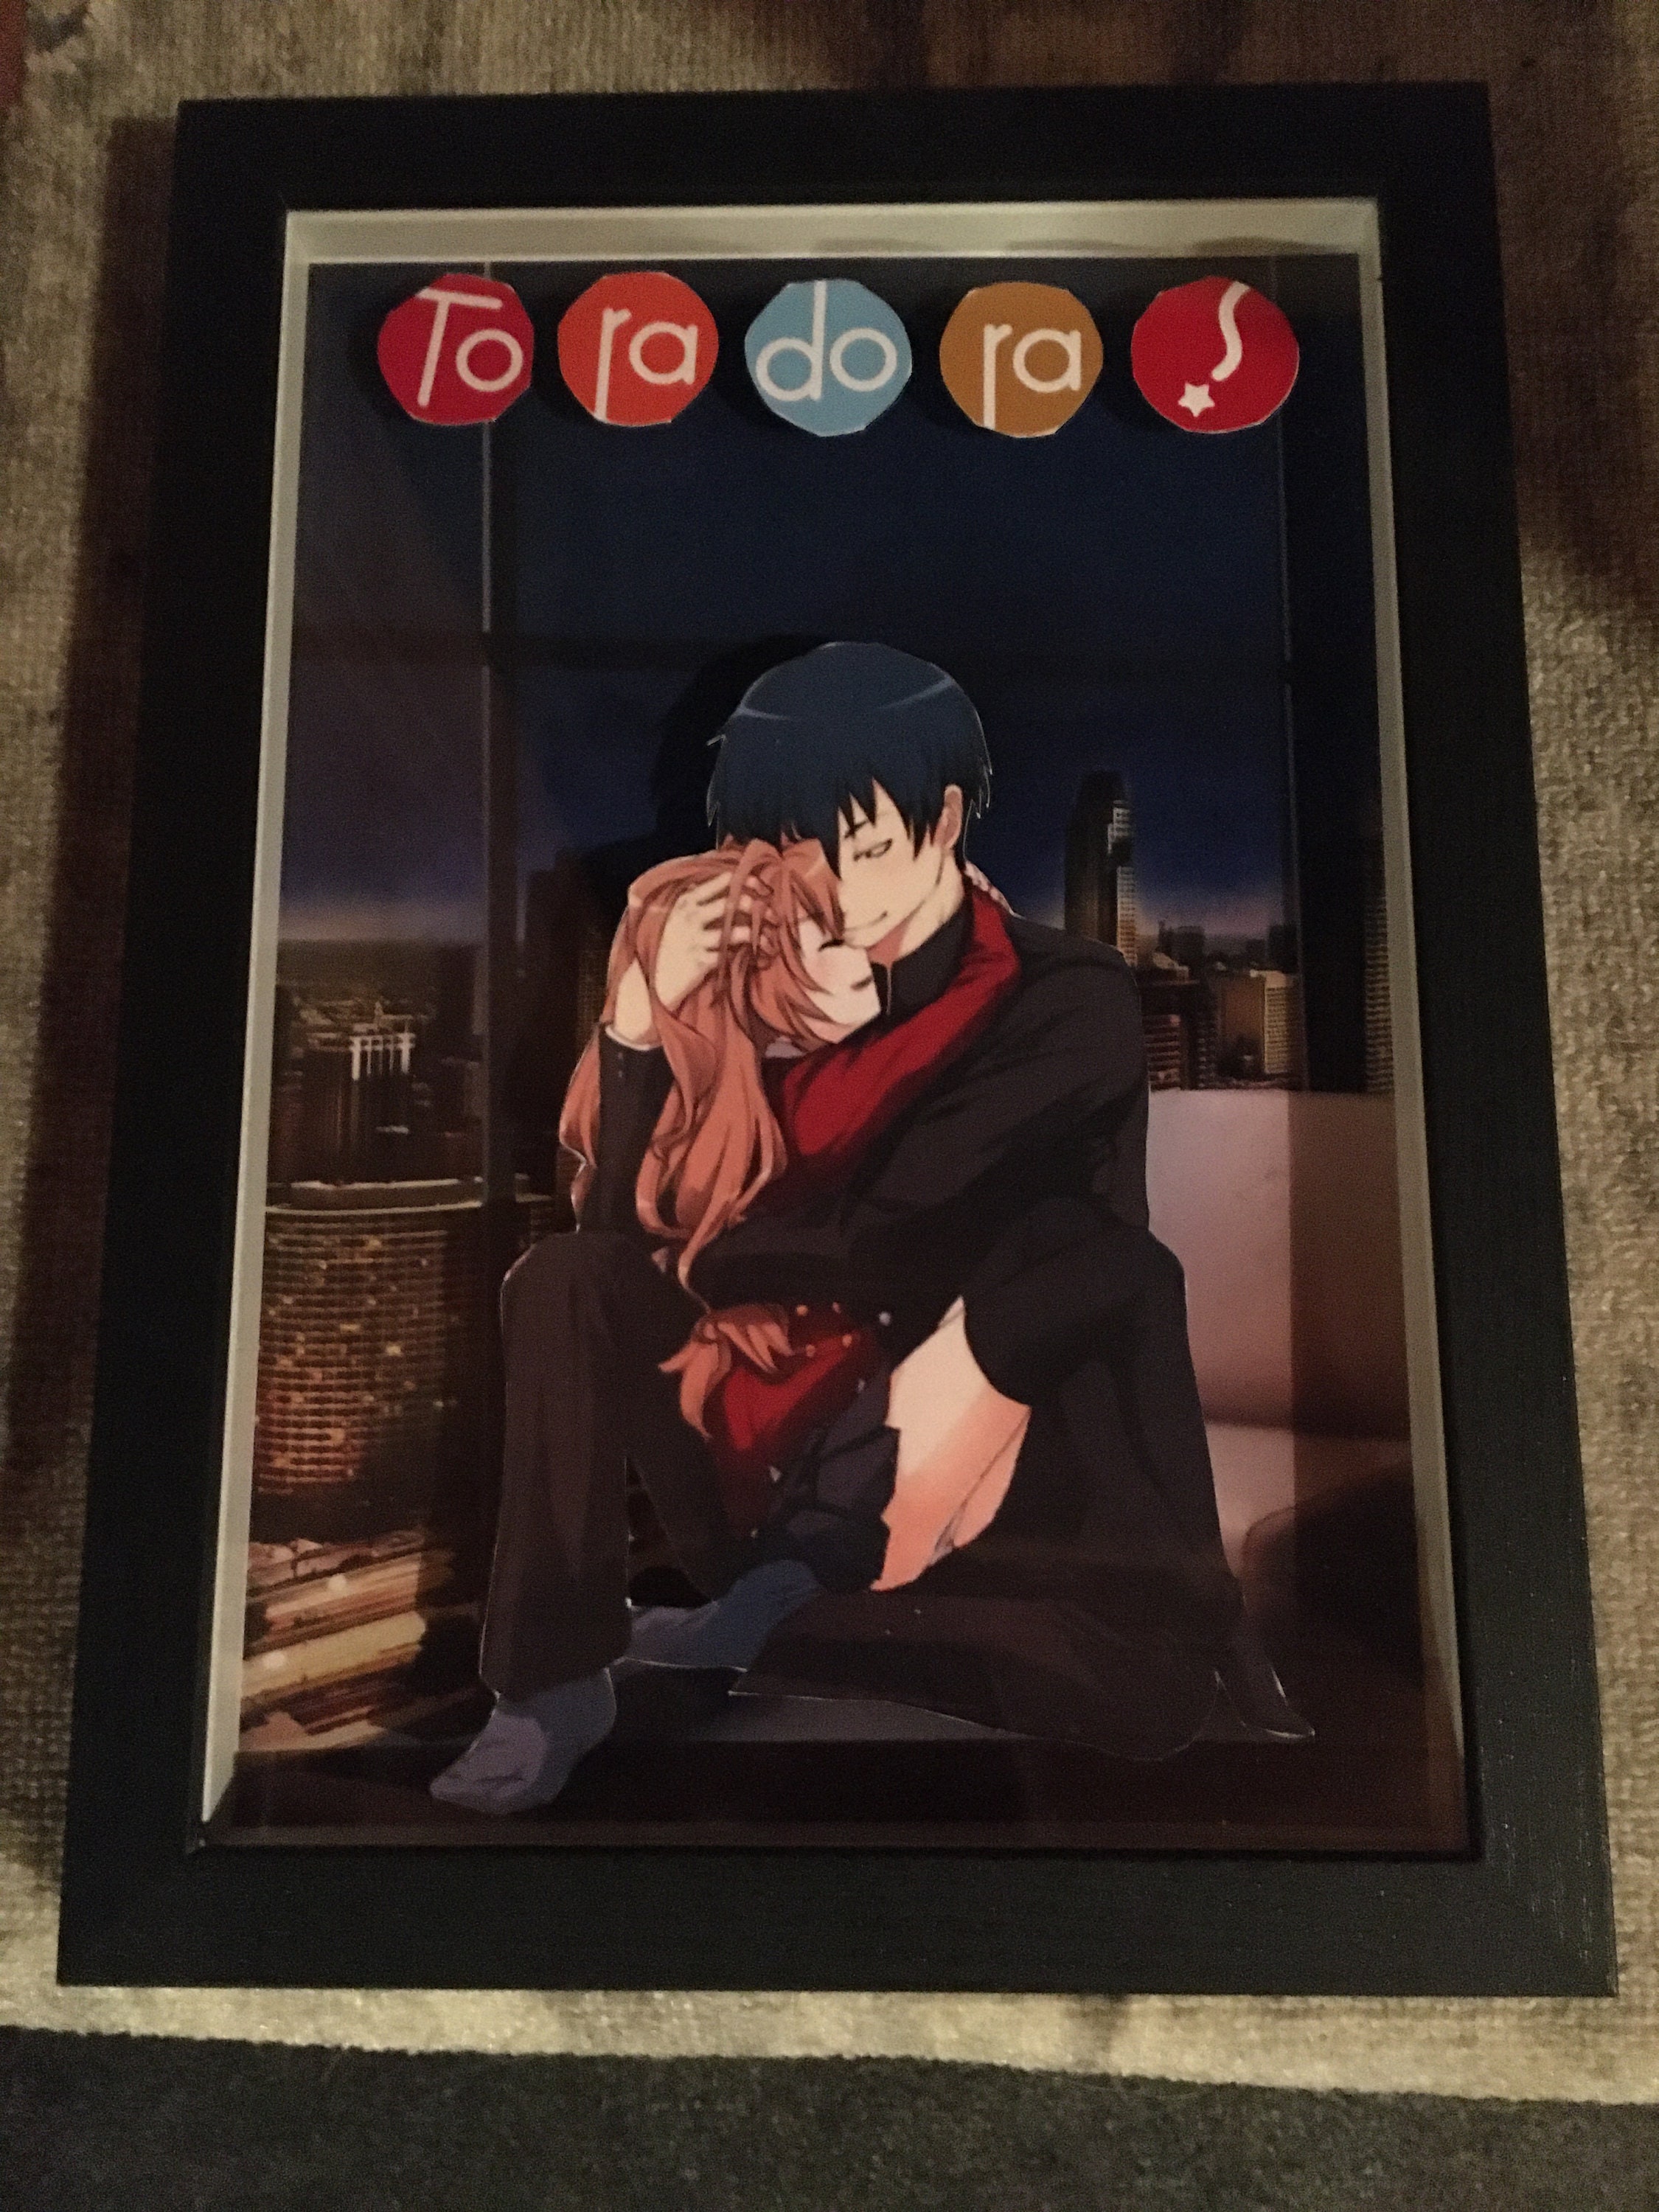 Taiga Aisaka Toradora Anime Waifu Art Board Print for Sale by RalphJaystin